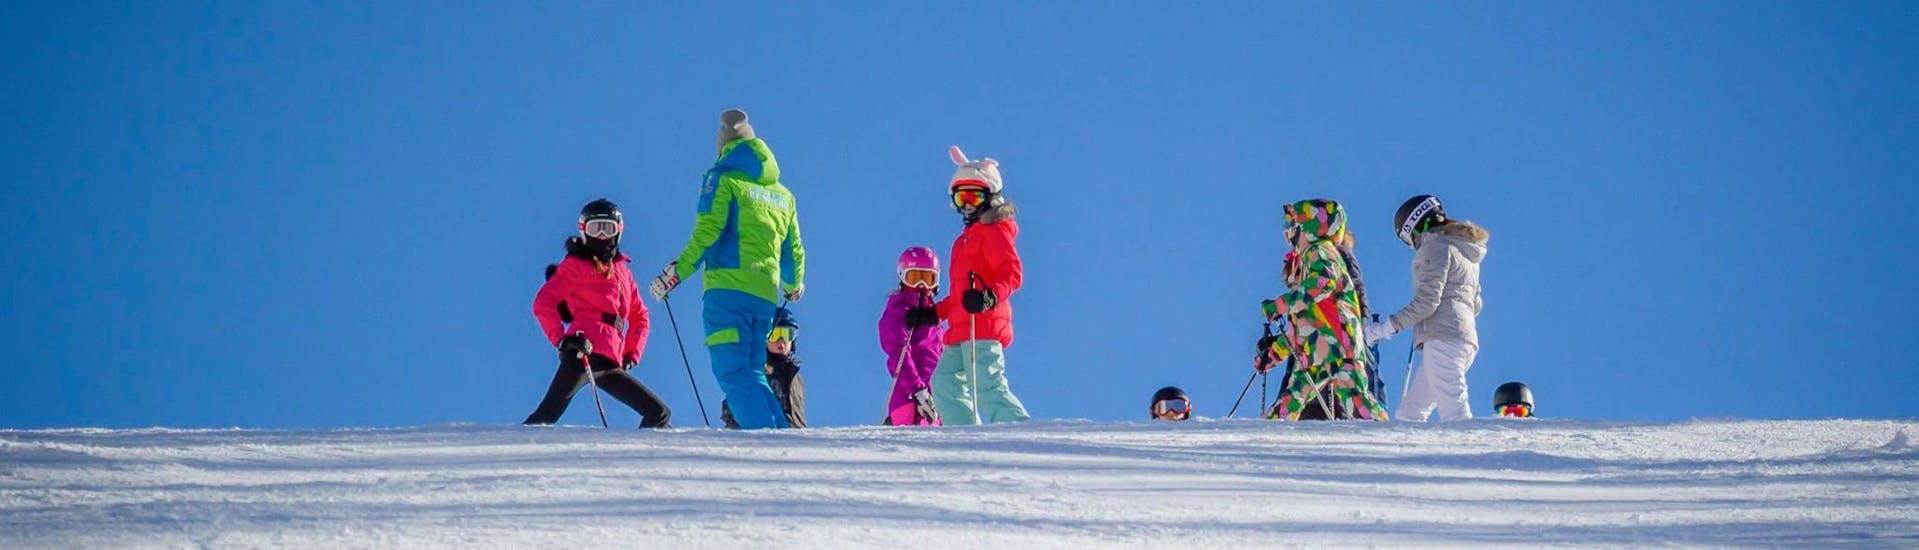 Skilessen voor kinderen vanaf 4 jaar voor alle niveaus.